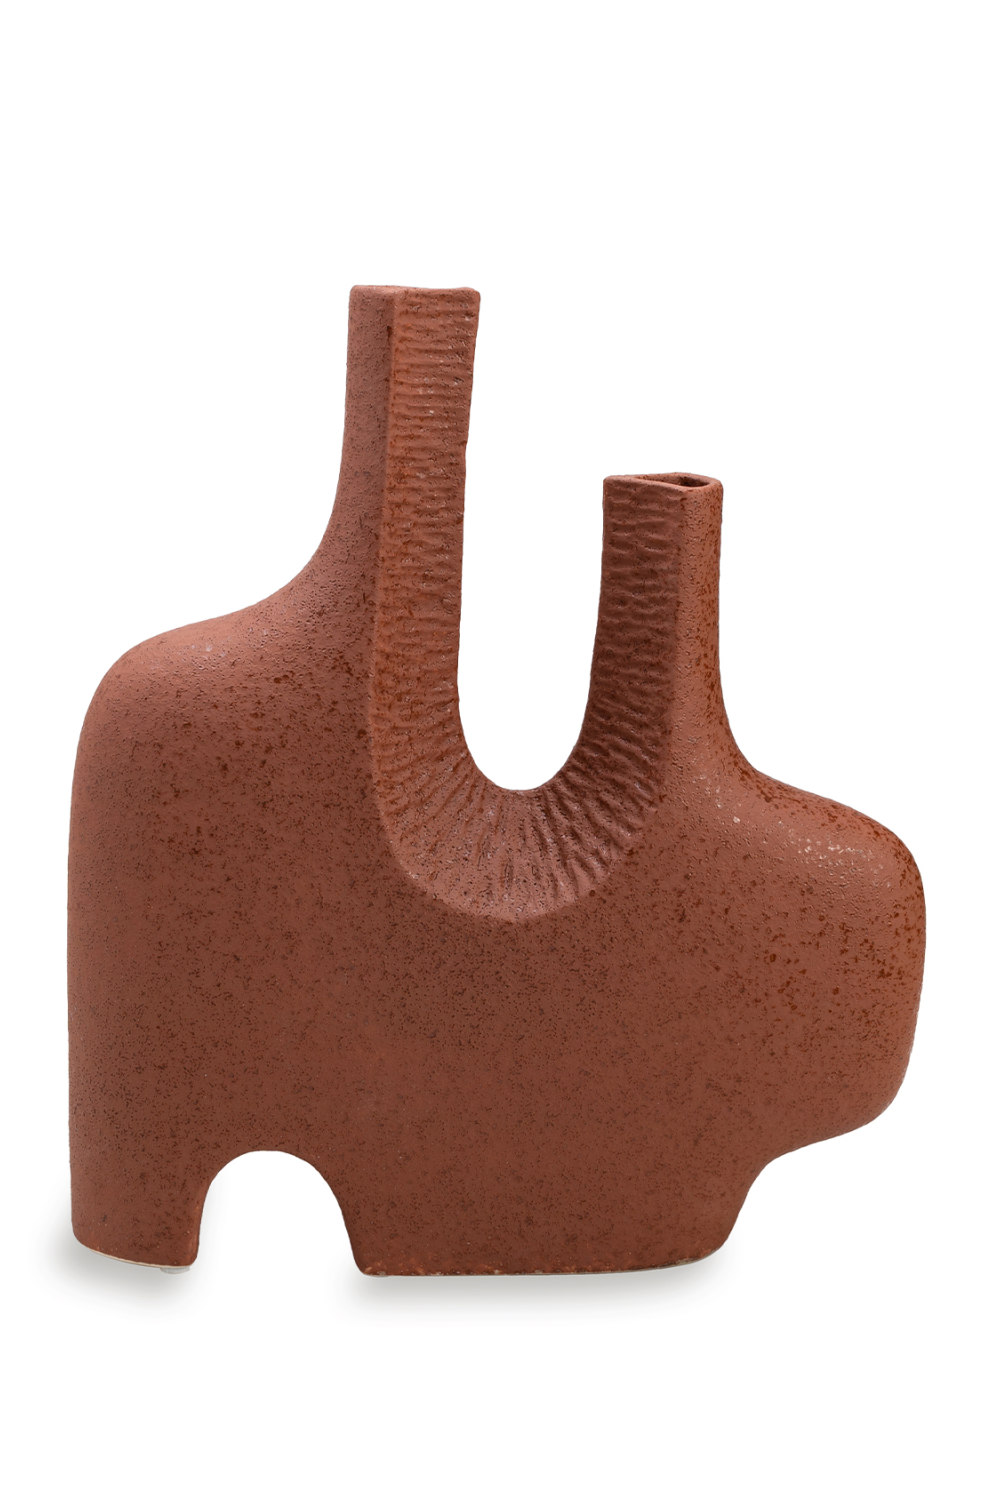 Glazed Ceramic Sculptural Vase | Liang & Eimil Kelso | Oroa.com